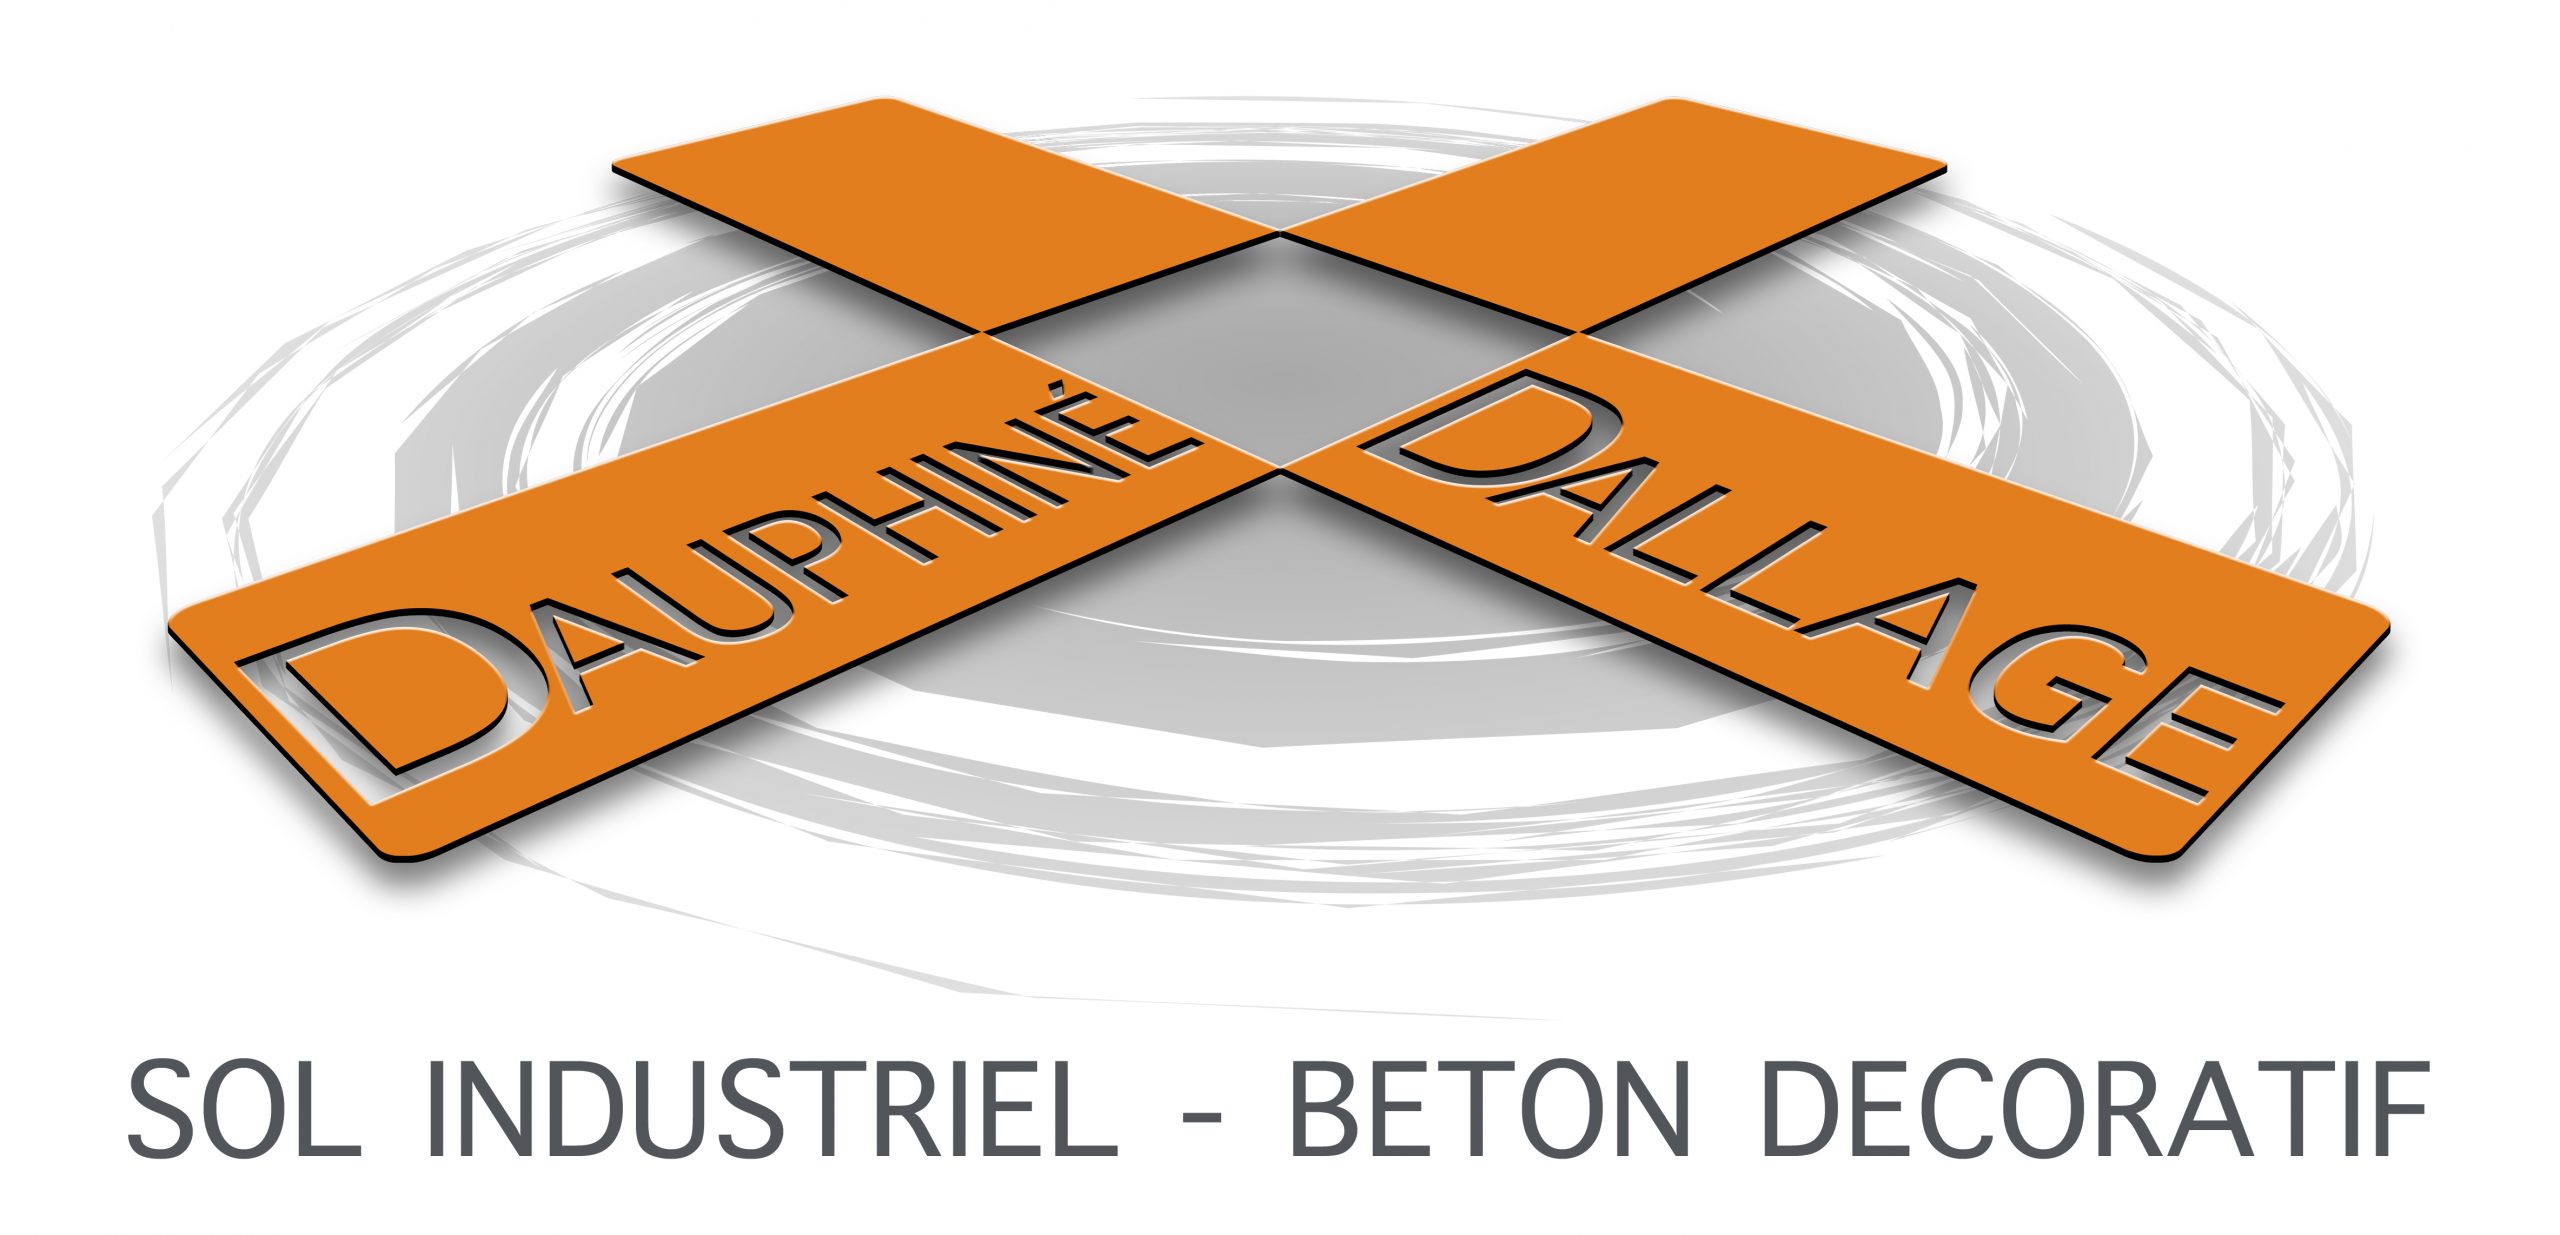 Le logo de la société Dauphiné Dallage